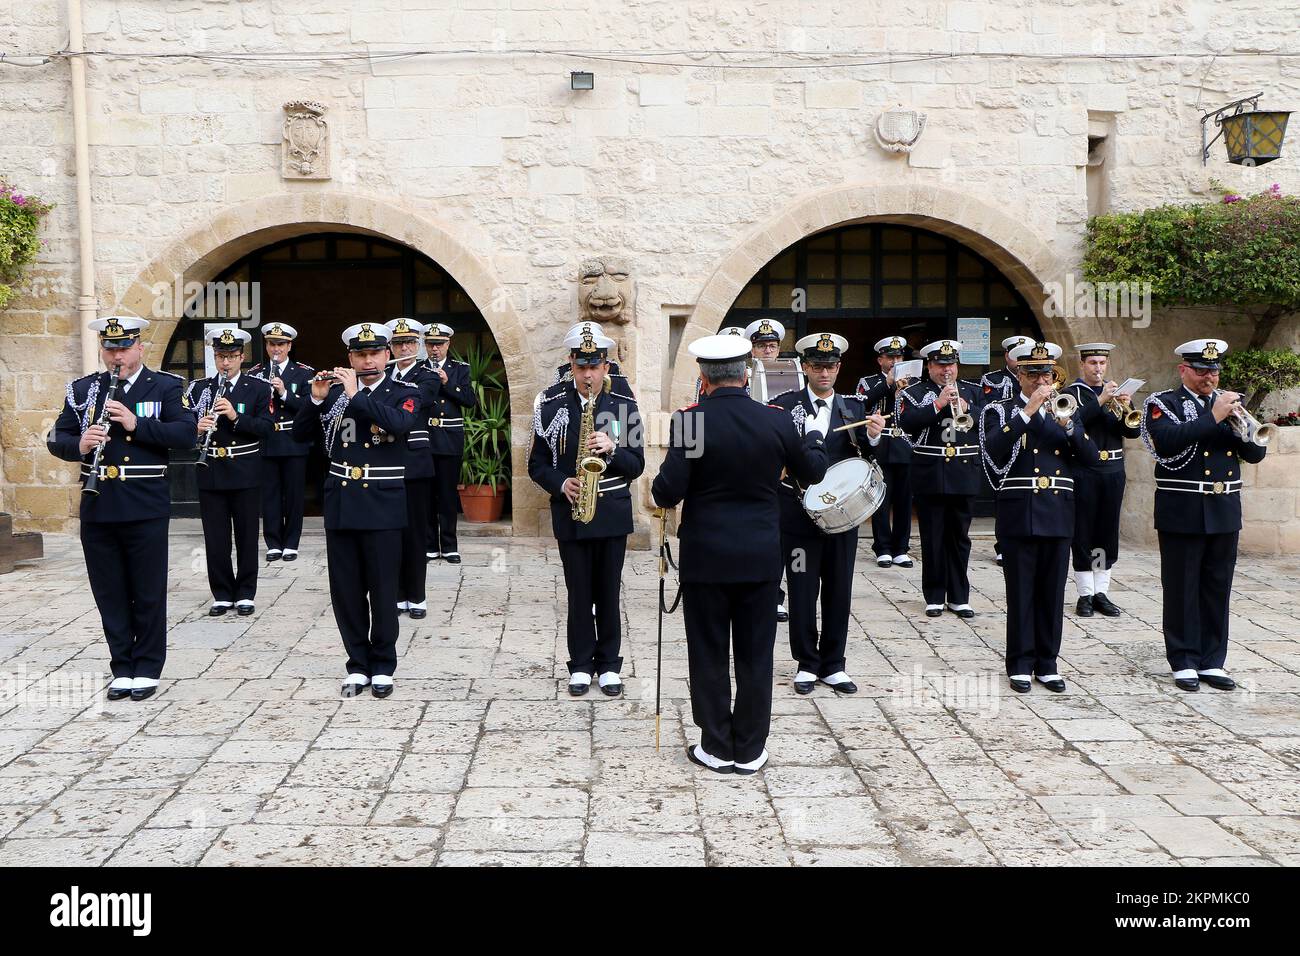 La banda musicale della Marina militare Italiana con uniforme invernale durante una cerimonia a Taranto, Puglia, Italia. Foto di alta qualità Foto Stock